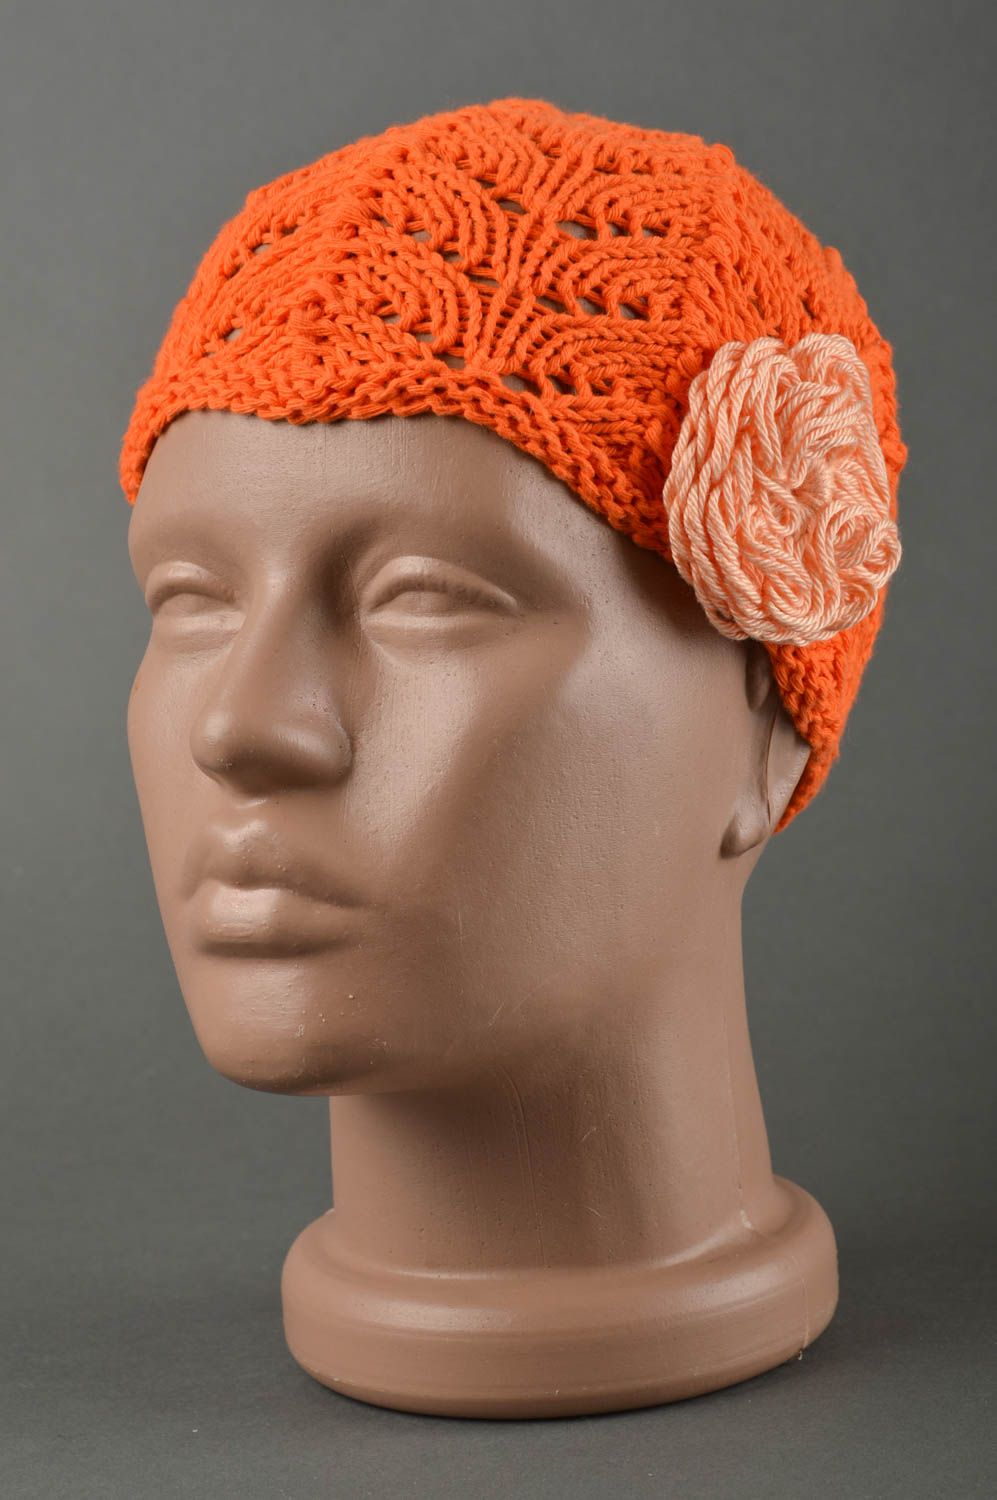 Вязаная шапка для детей хэндмэйд шапочка на девочку весенняя шапка оранжевая фото 1